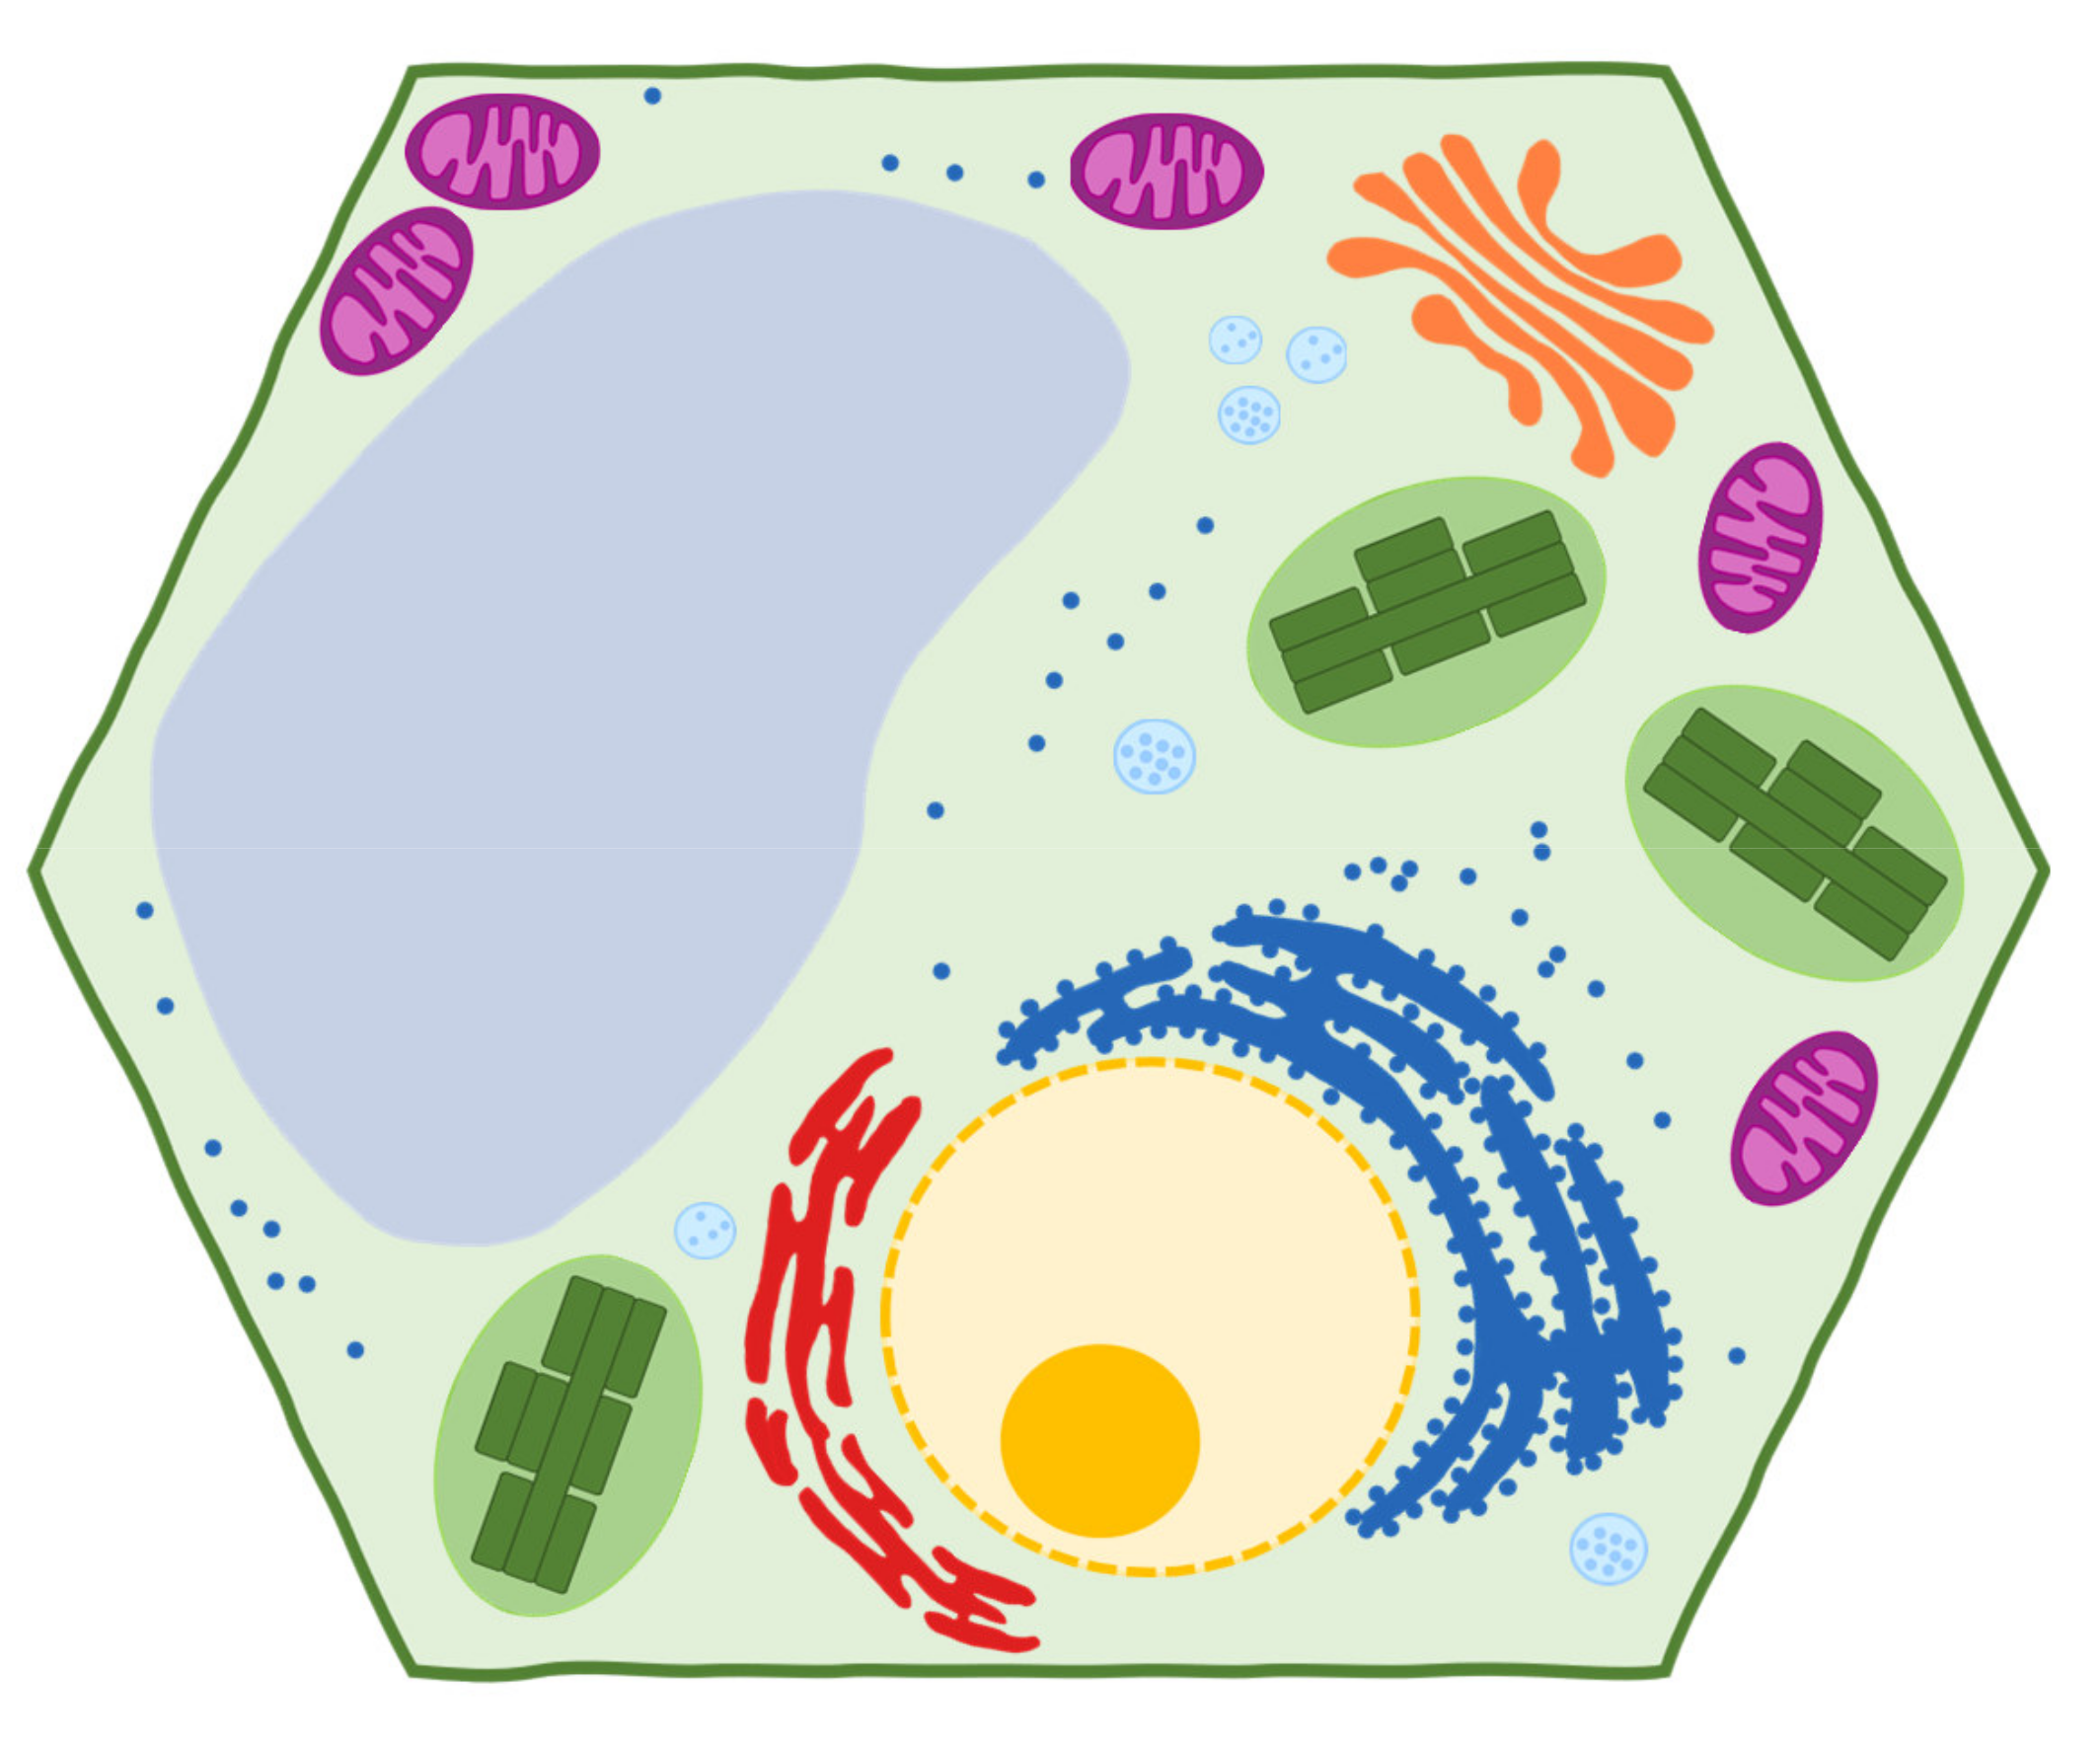 Grafik: Pflanzenzelle – Aufbau